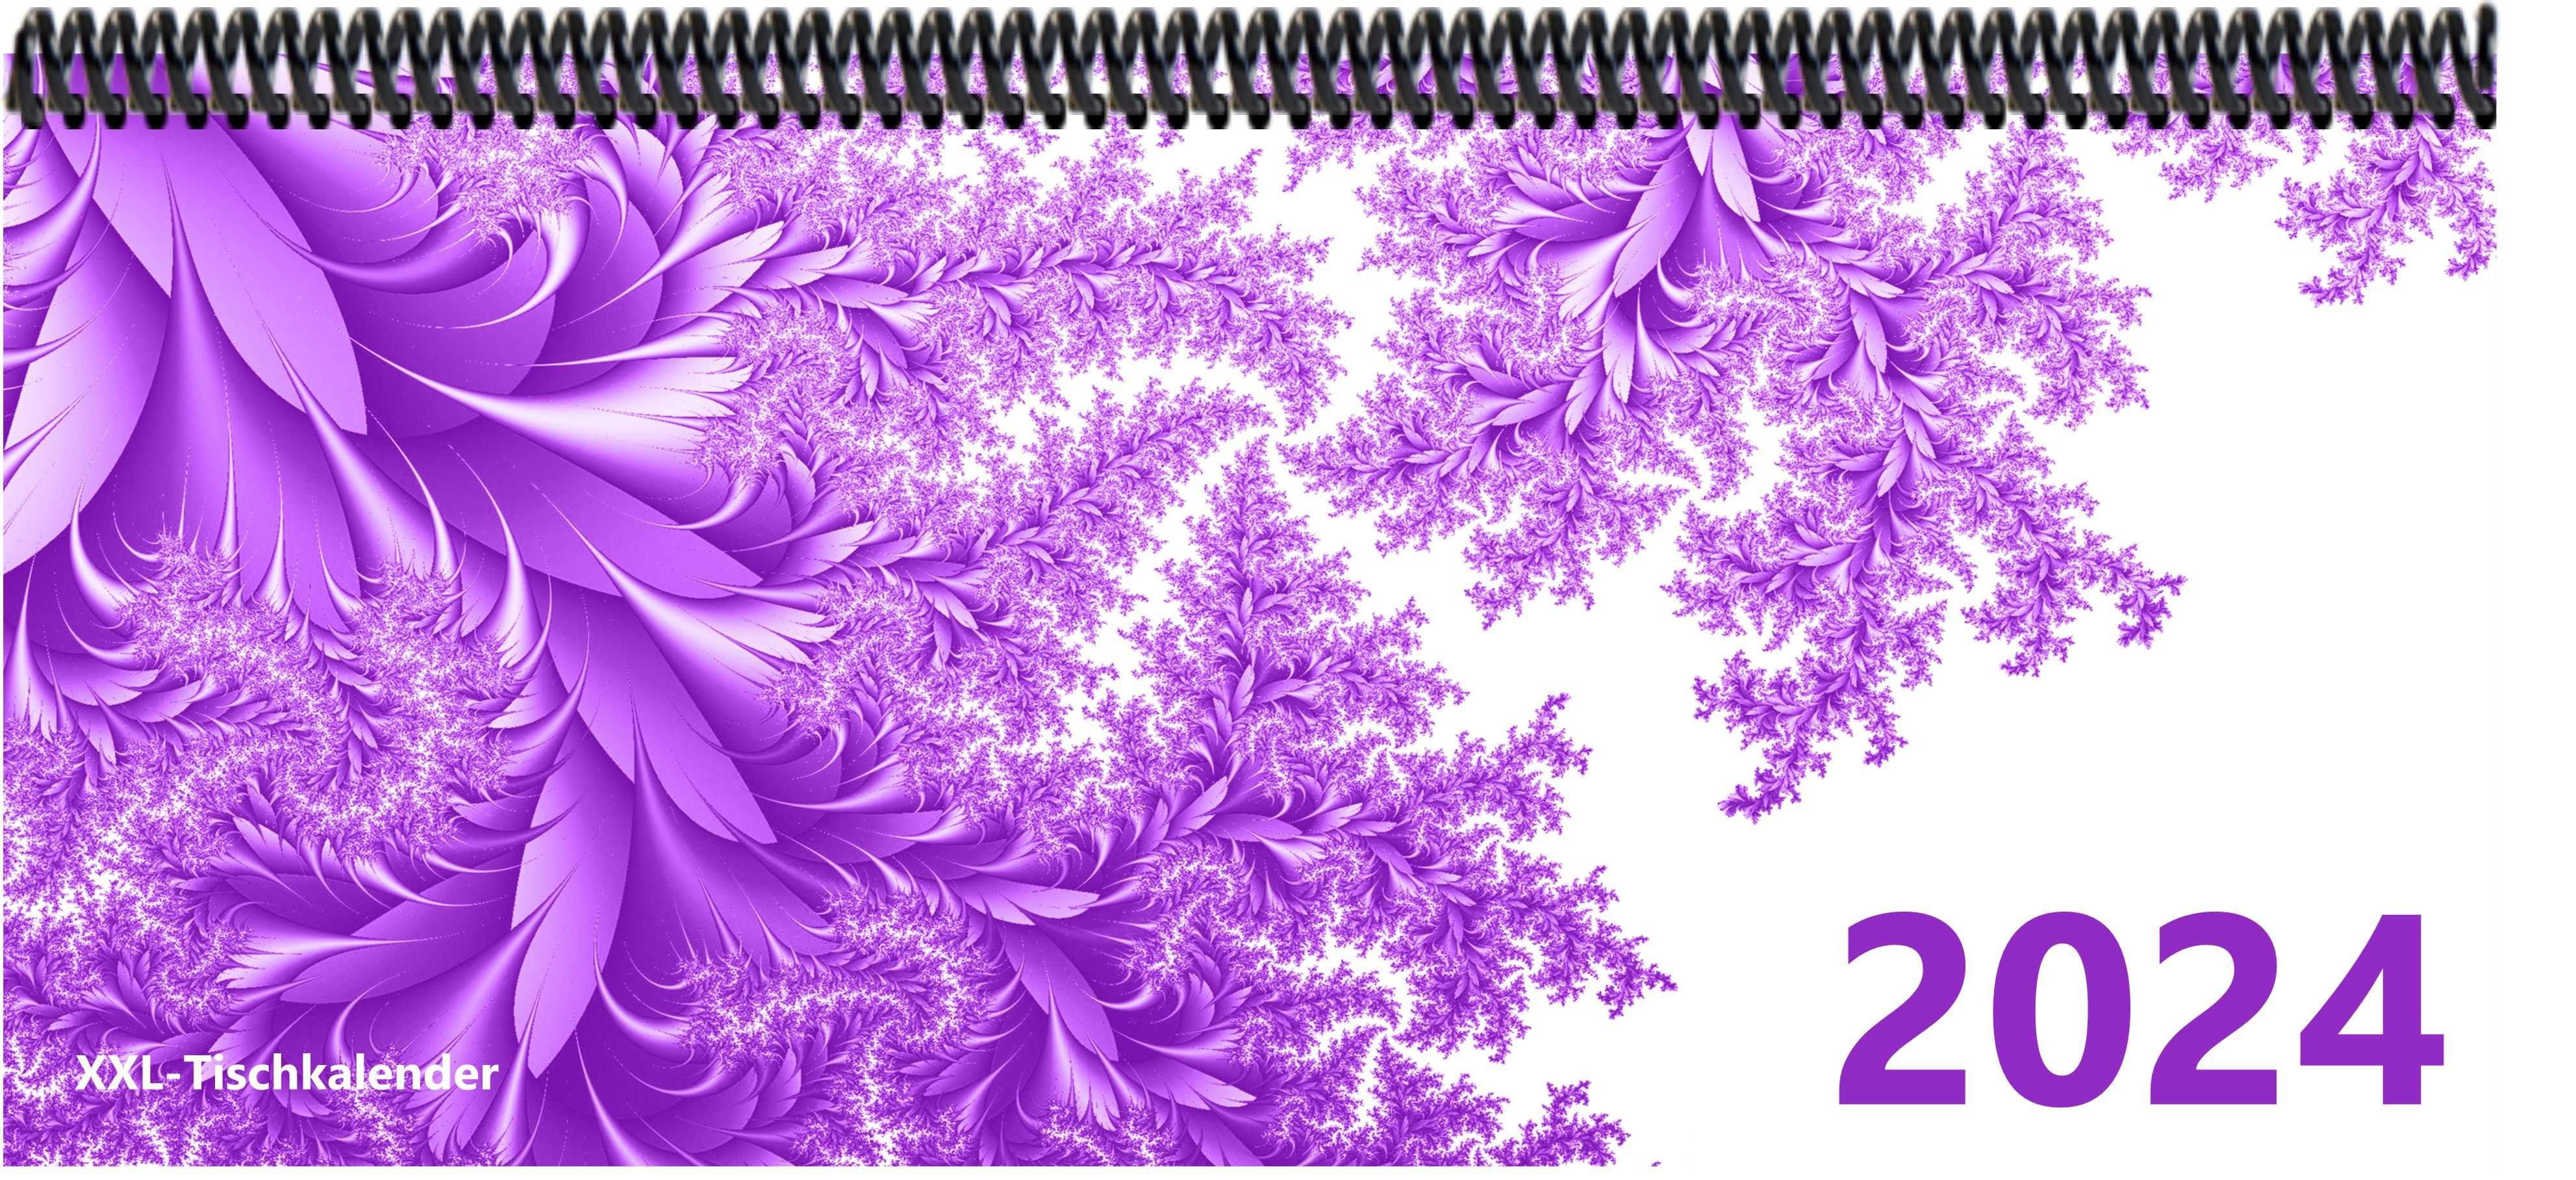 E&Z Verlag Gmbh Schreibtischkalender Bunt - Kalender XXL 2024 mit dem Muster Blätter lila